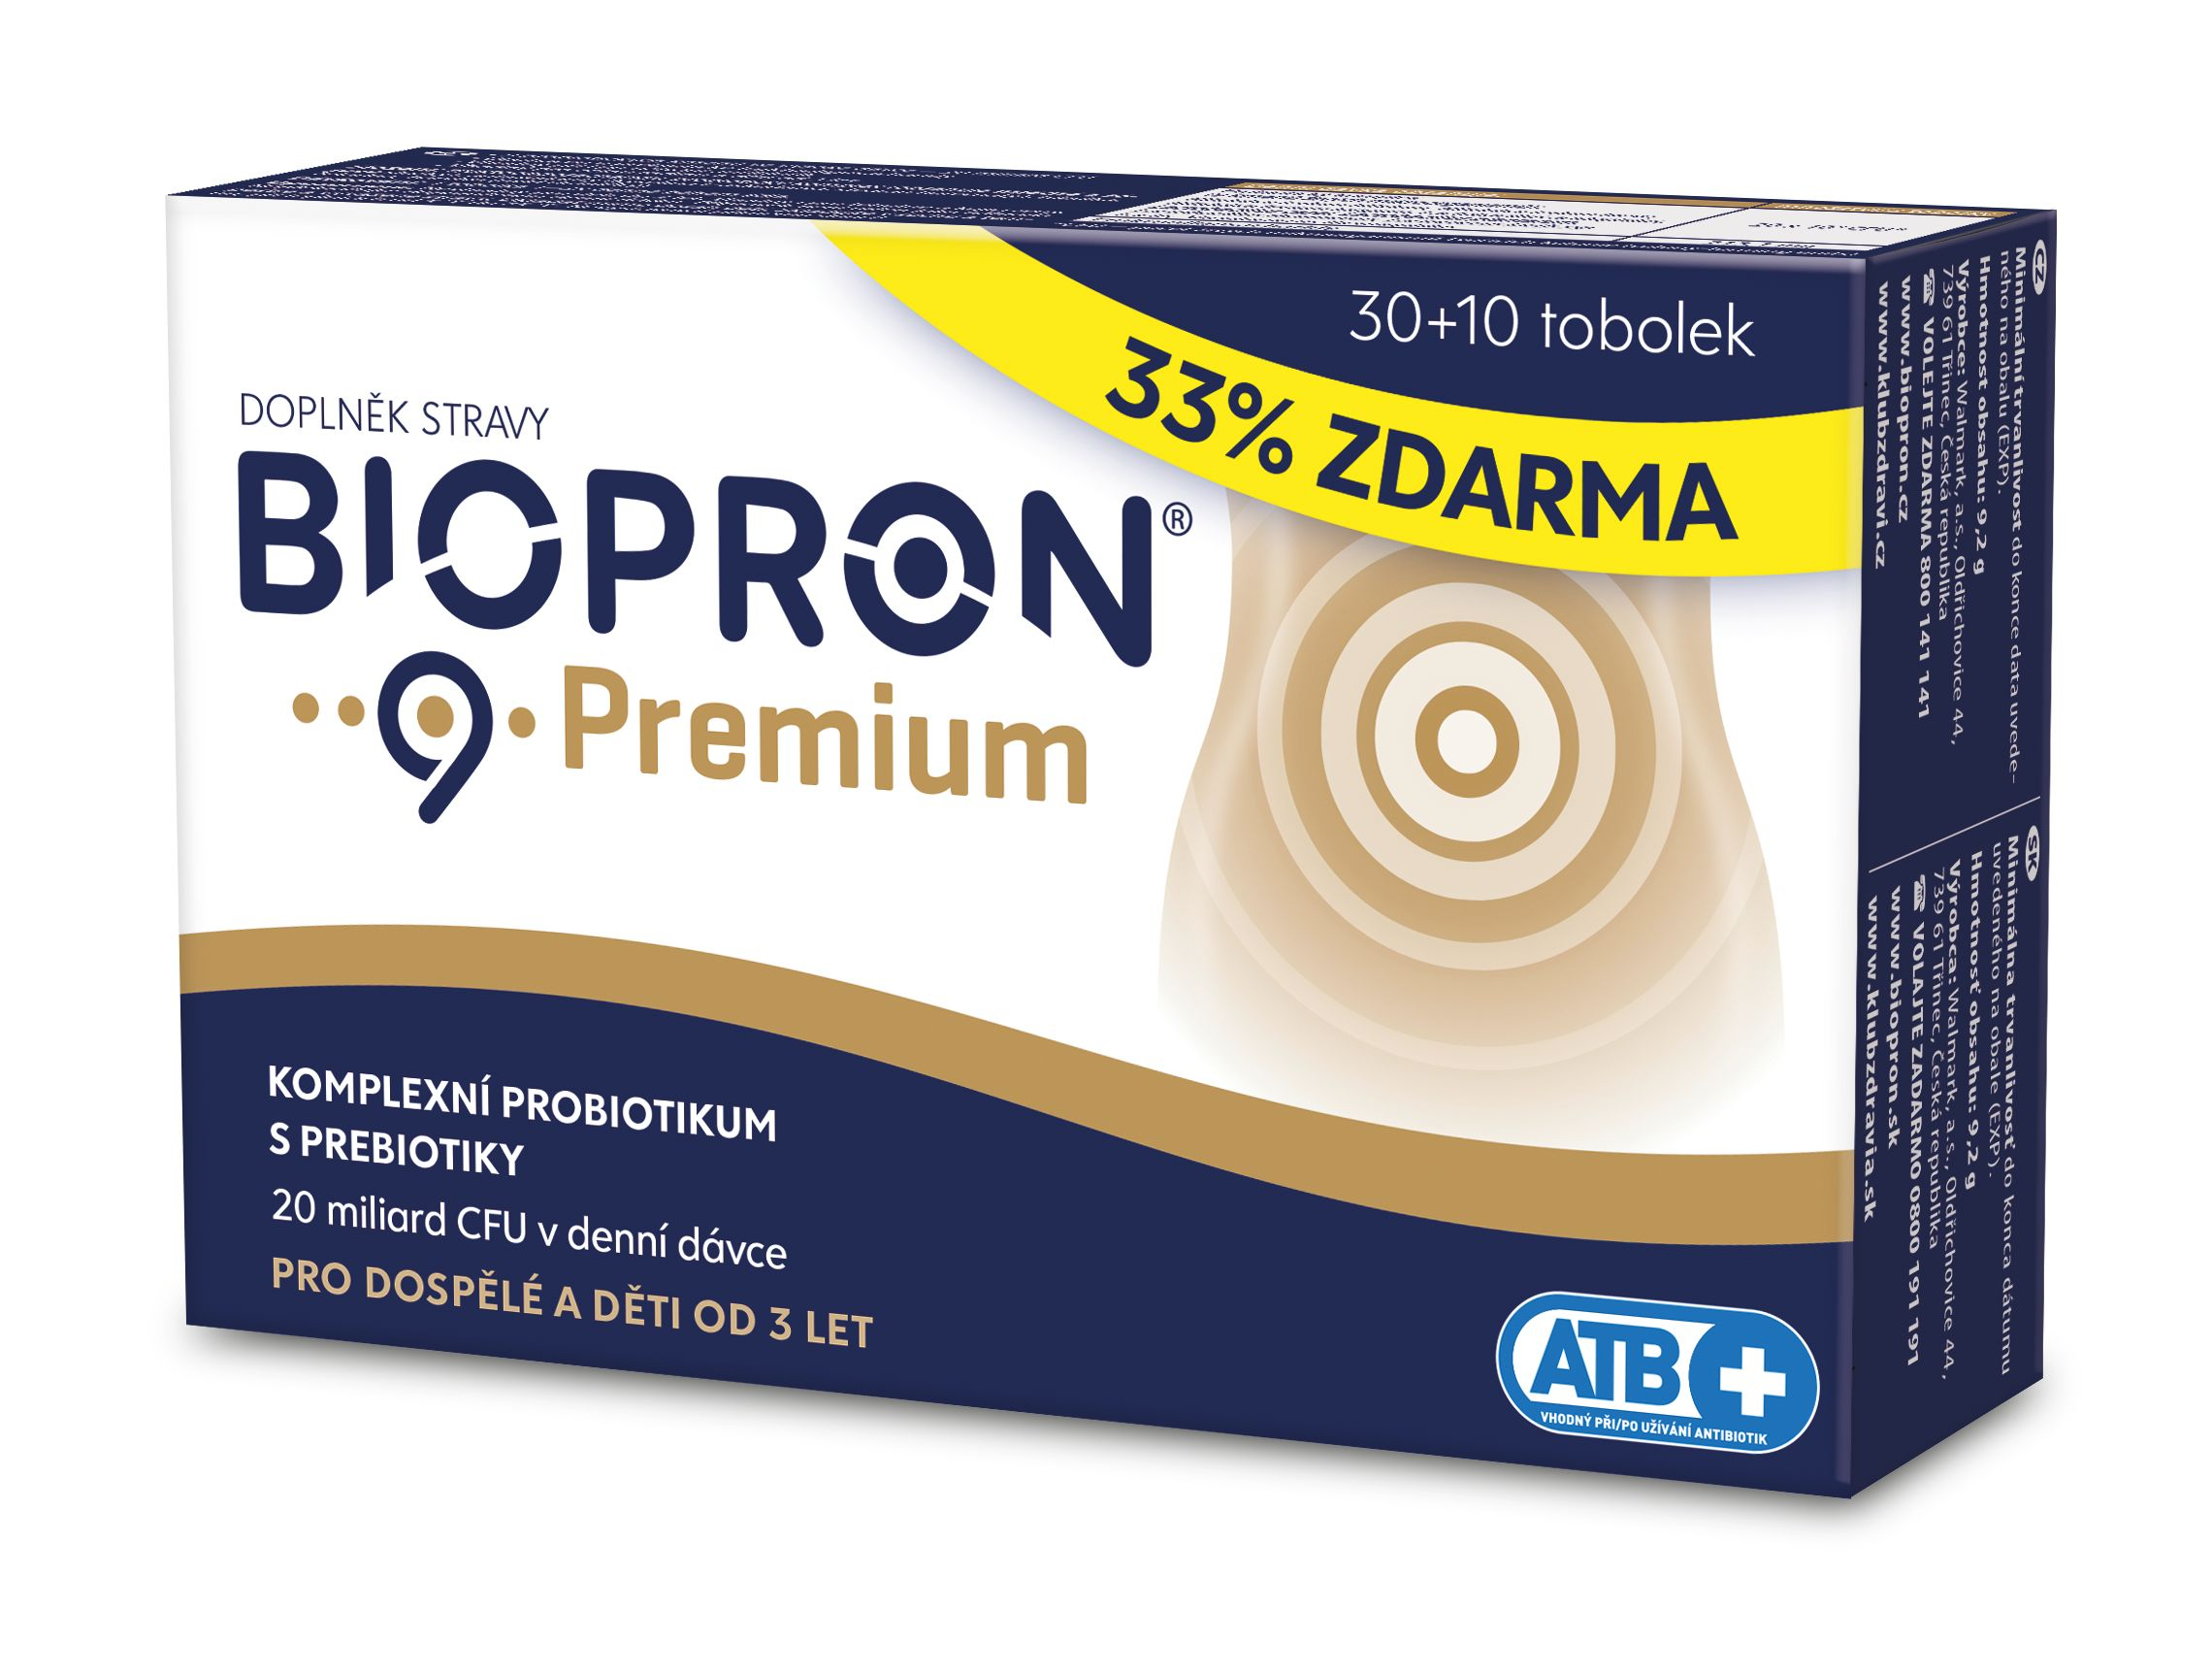 Biopron 9 Premium 30+10 tobolek Biopron